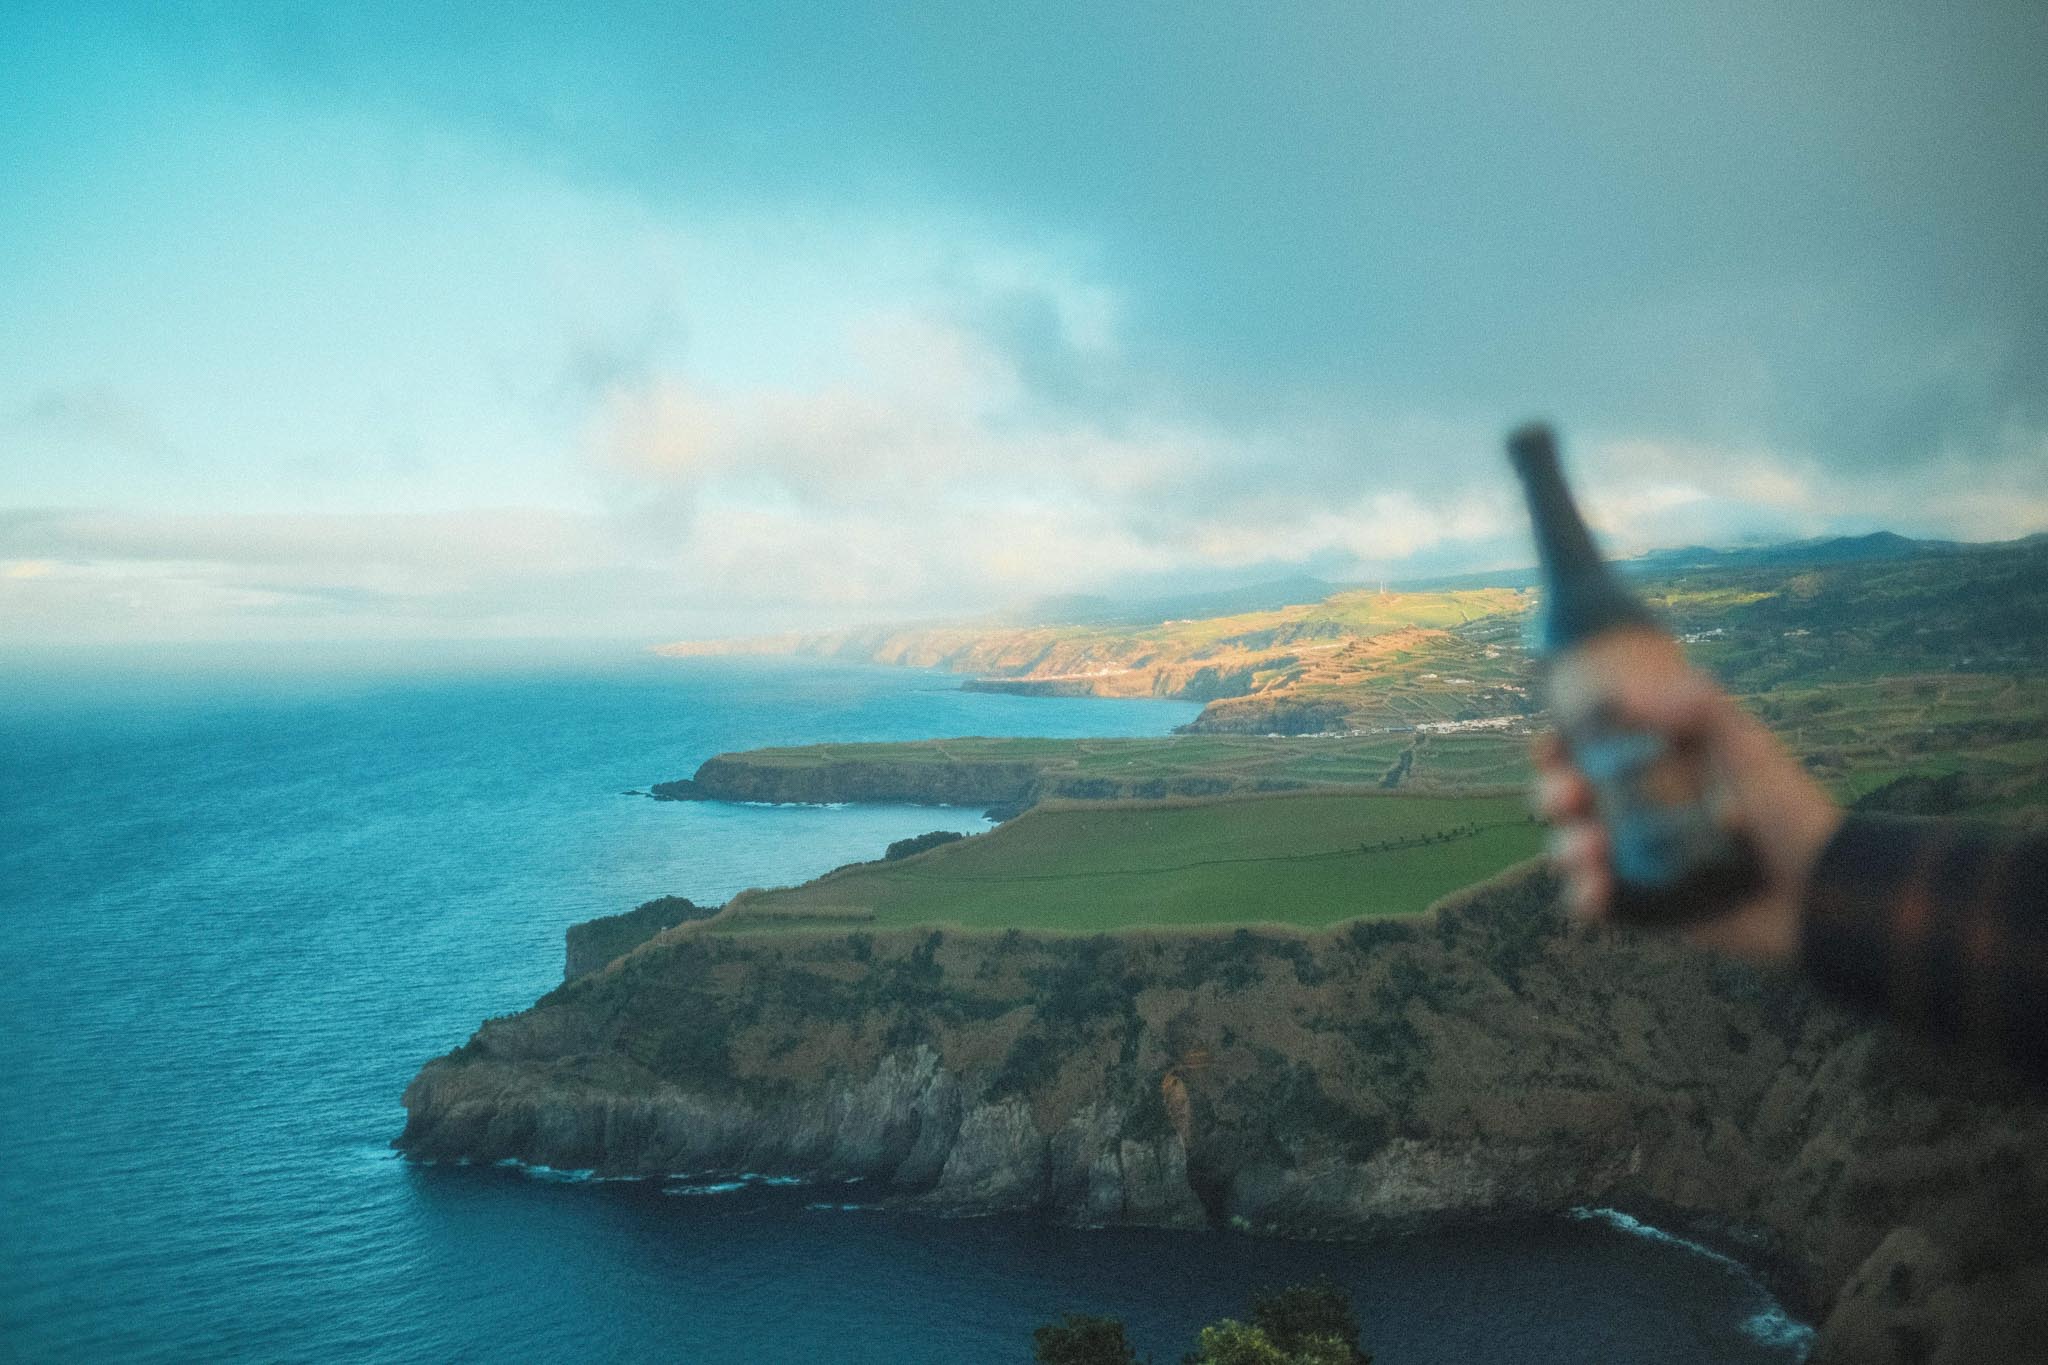 Cerveja artesanal açoriana Korisca Morgana (Porter) na mão de um jovem, com o mar azul, nuvens brancas e a costa da ilha de São Miguel de fundo, no Miradouro de Santa Iria, Ribeira Grande, Açores.